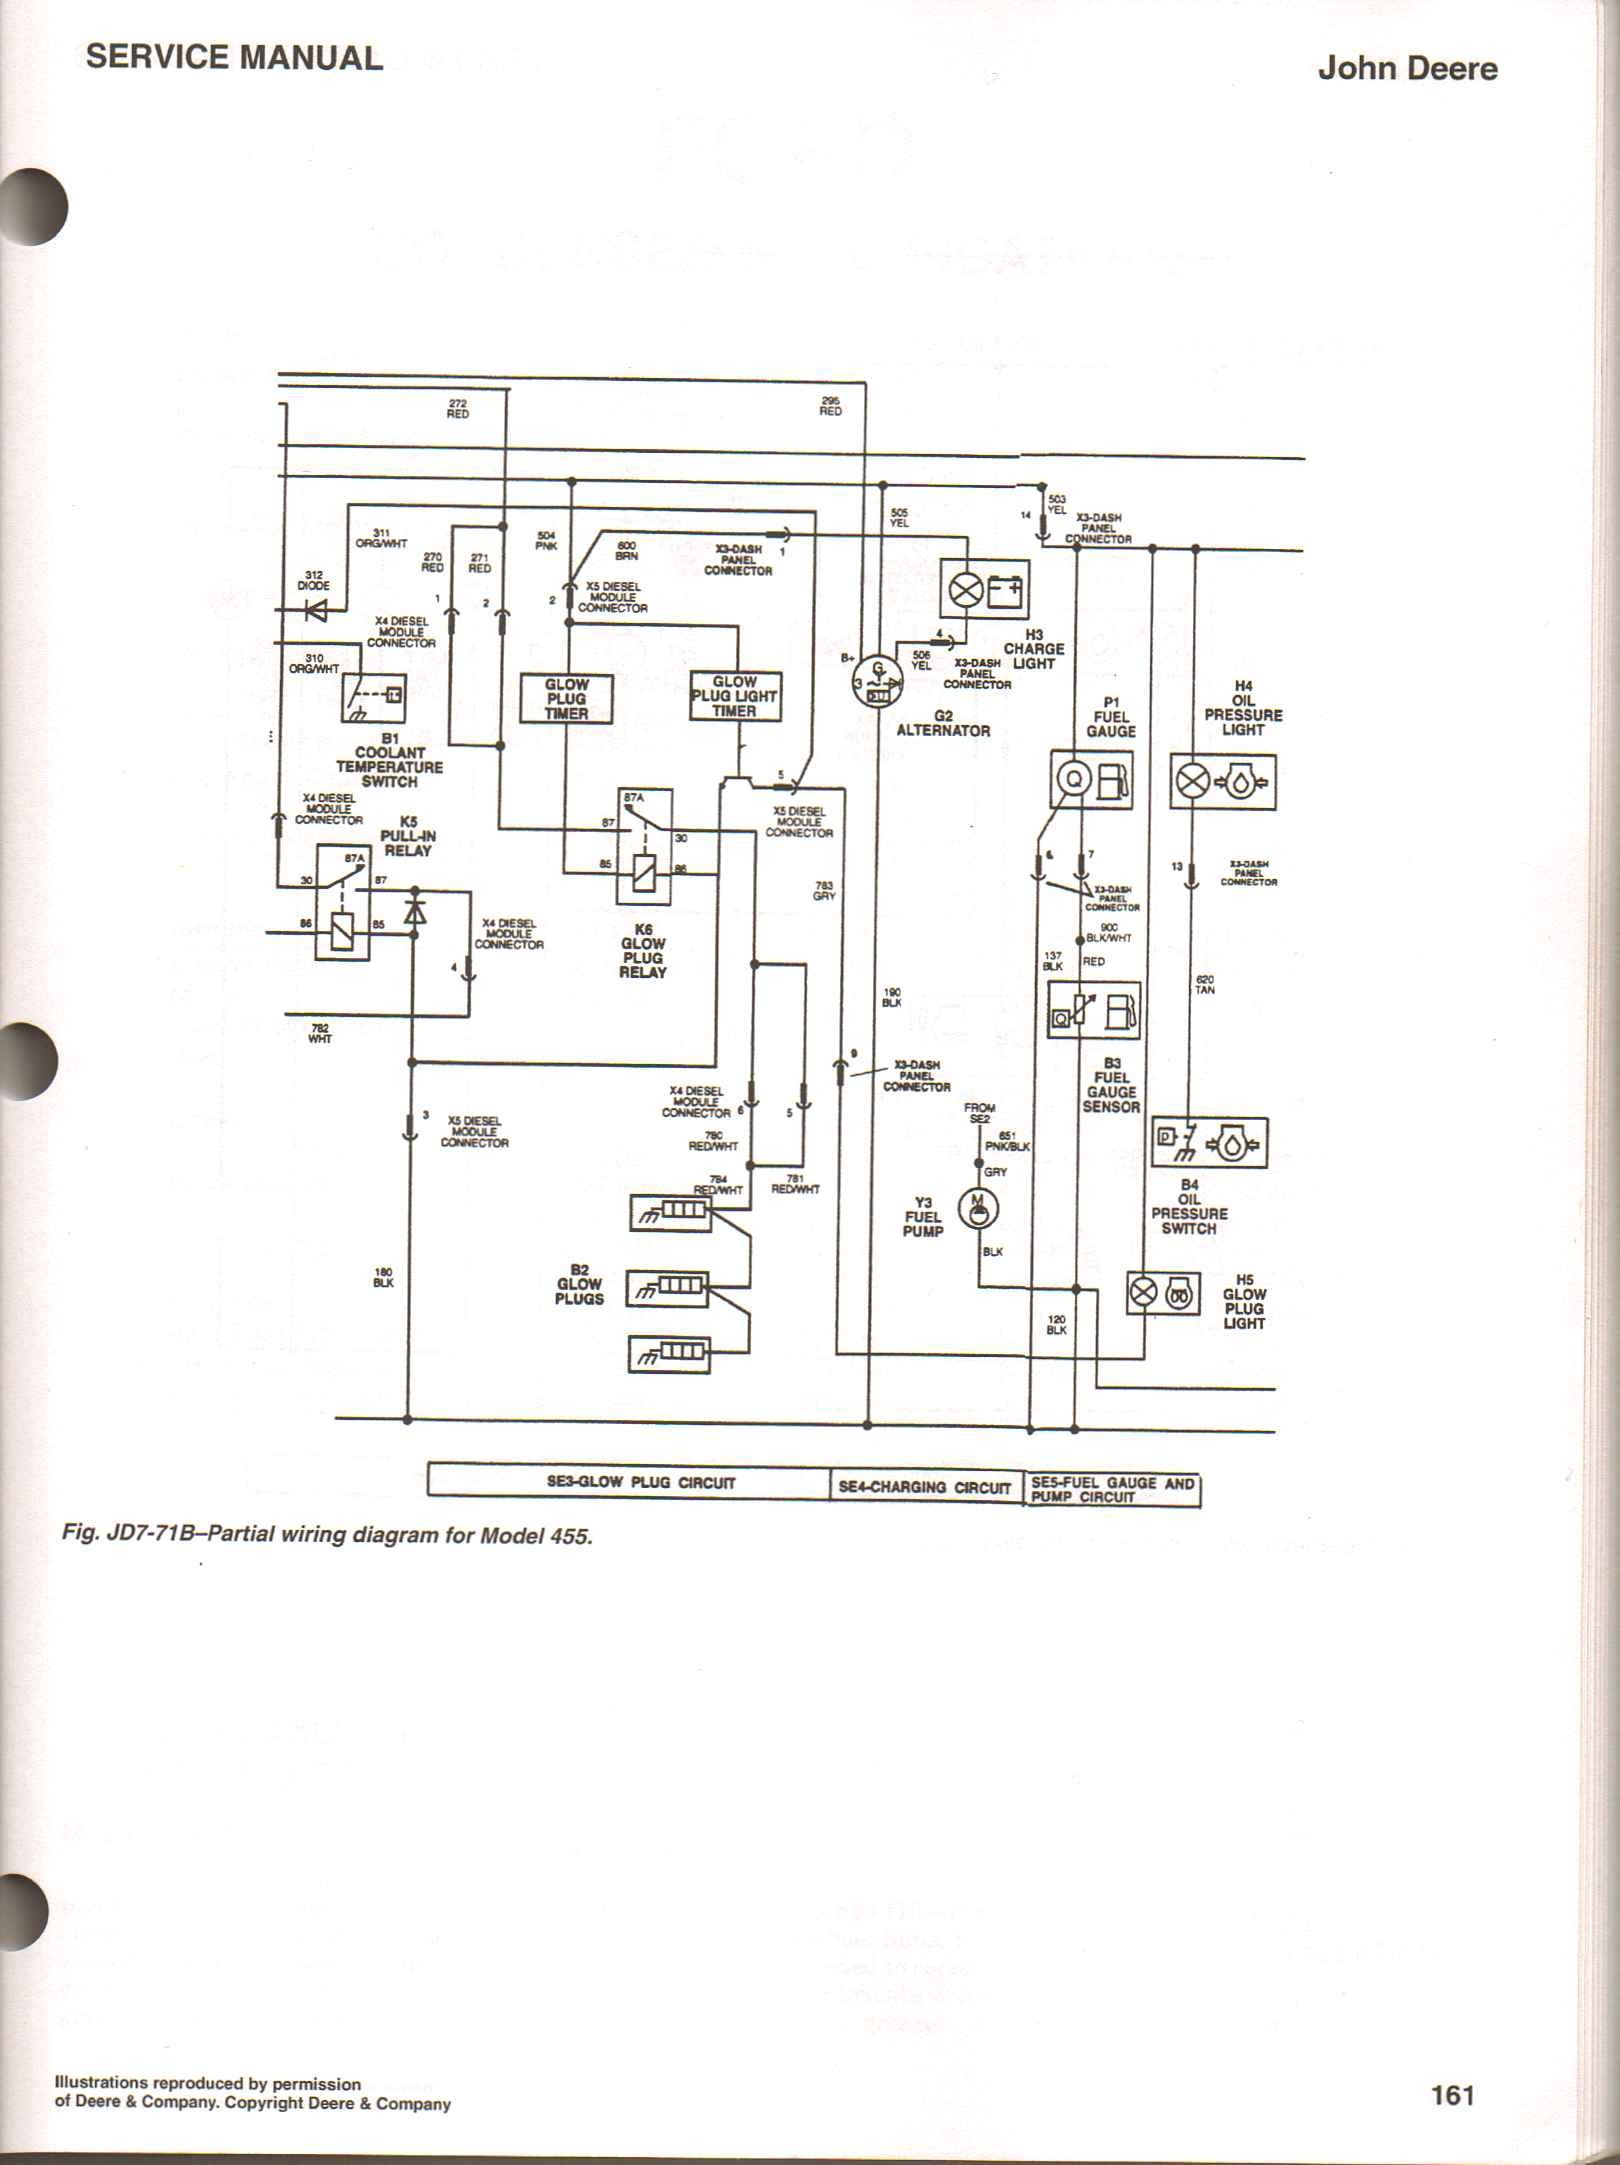 4020 12 Volt Wiring Diagram 4020 Lp Wiring Diagram Of 4020 12 Volt Wiring Diagram